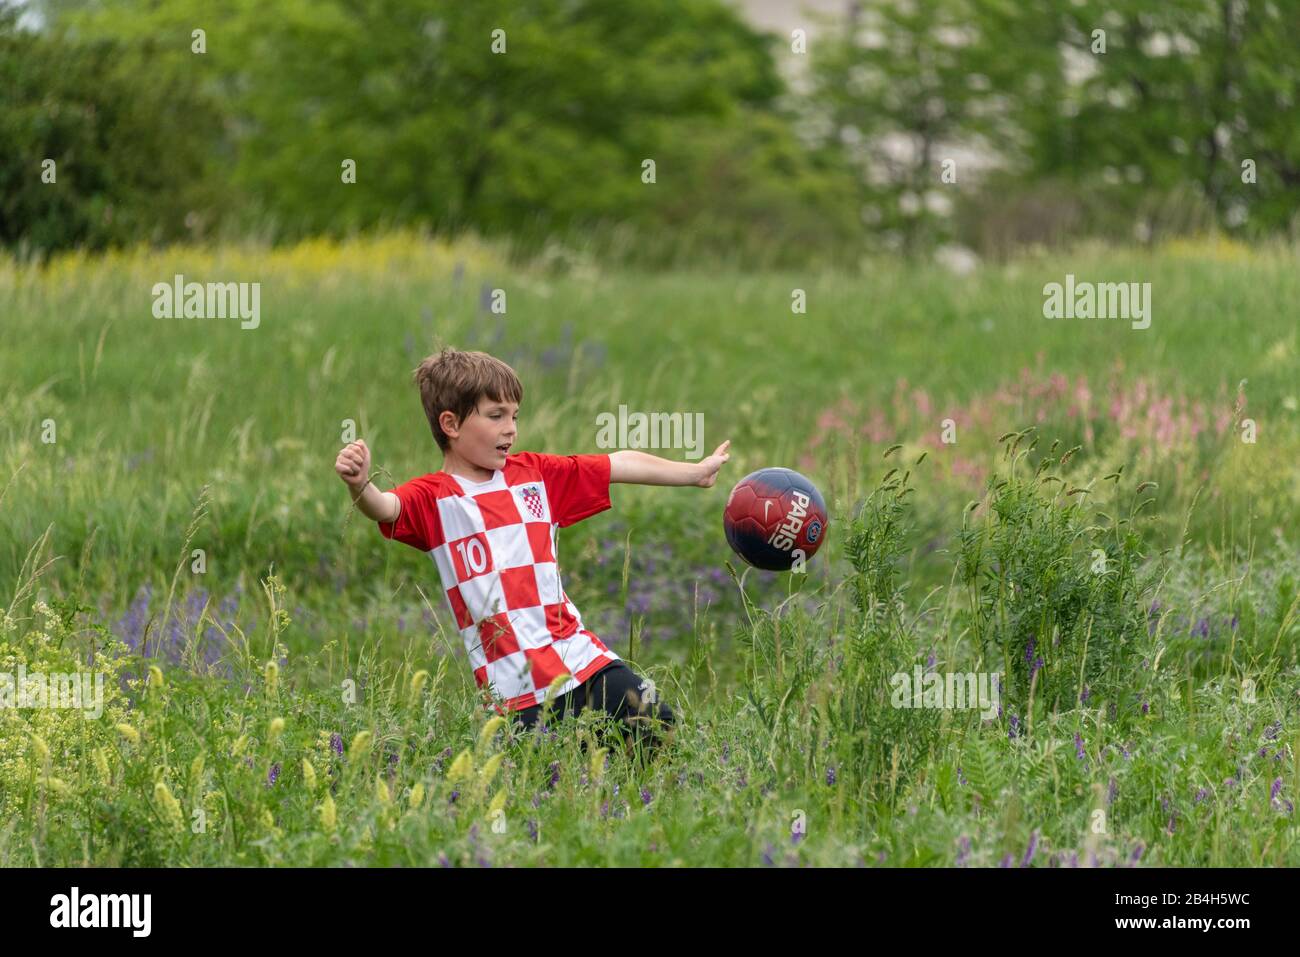 Un ragazzino con maglia croata gioca a calcio nell'erba alta, Foto Stock